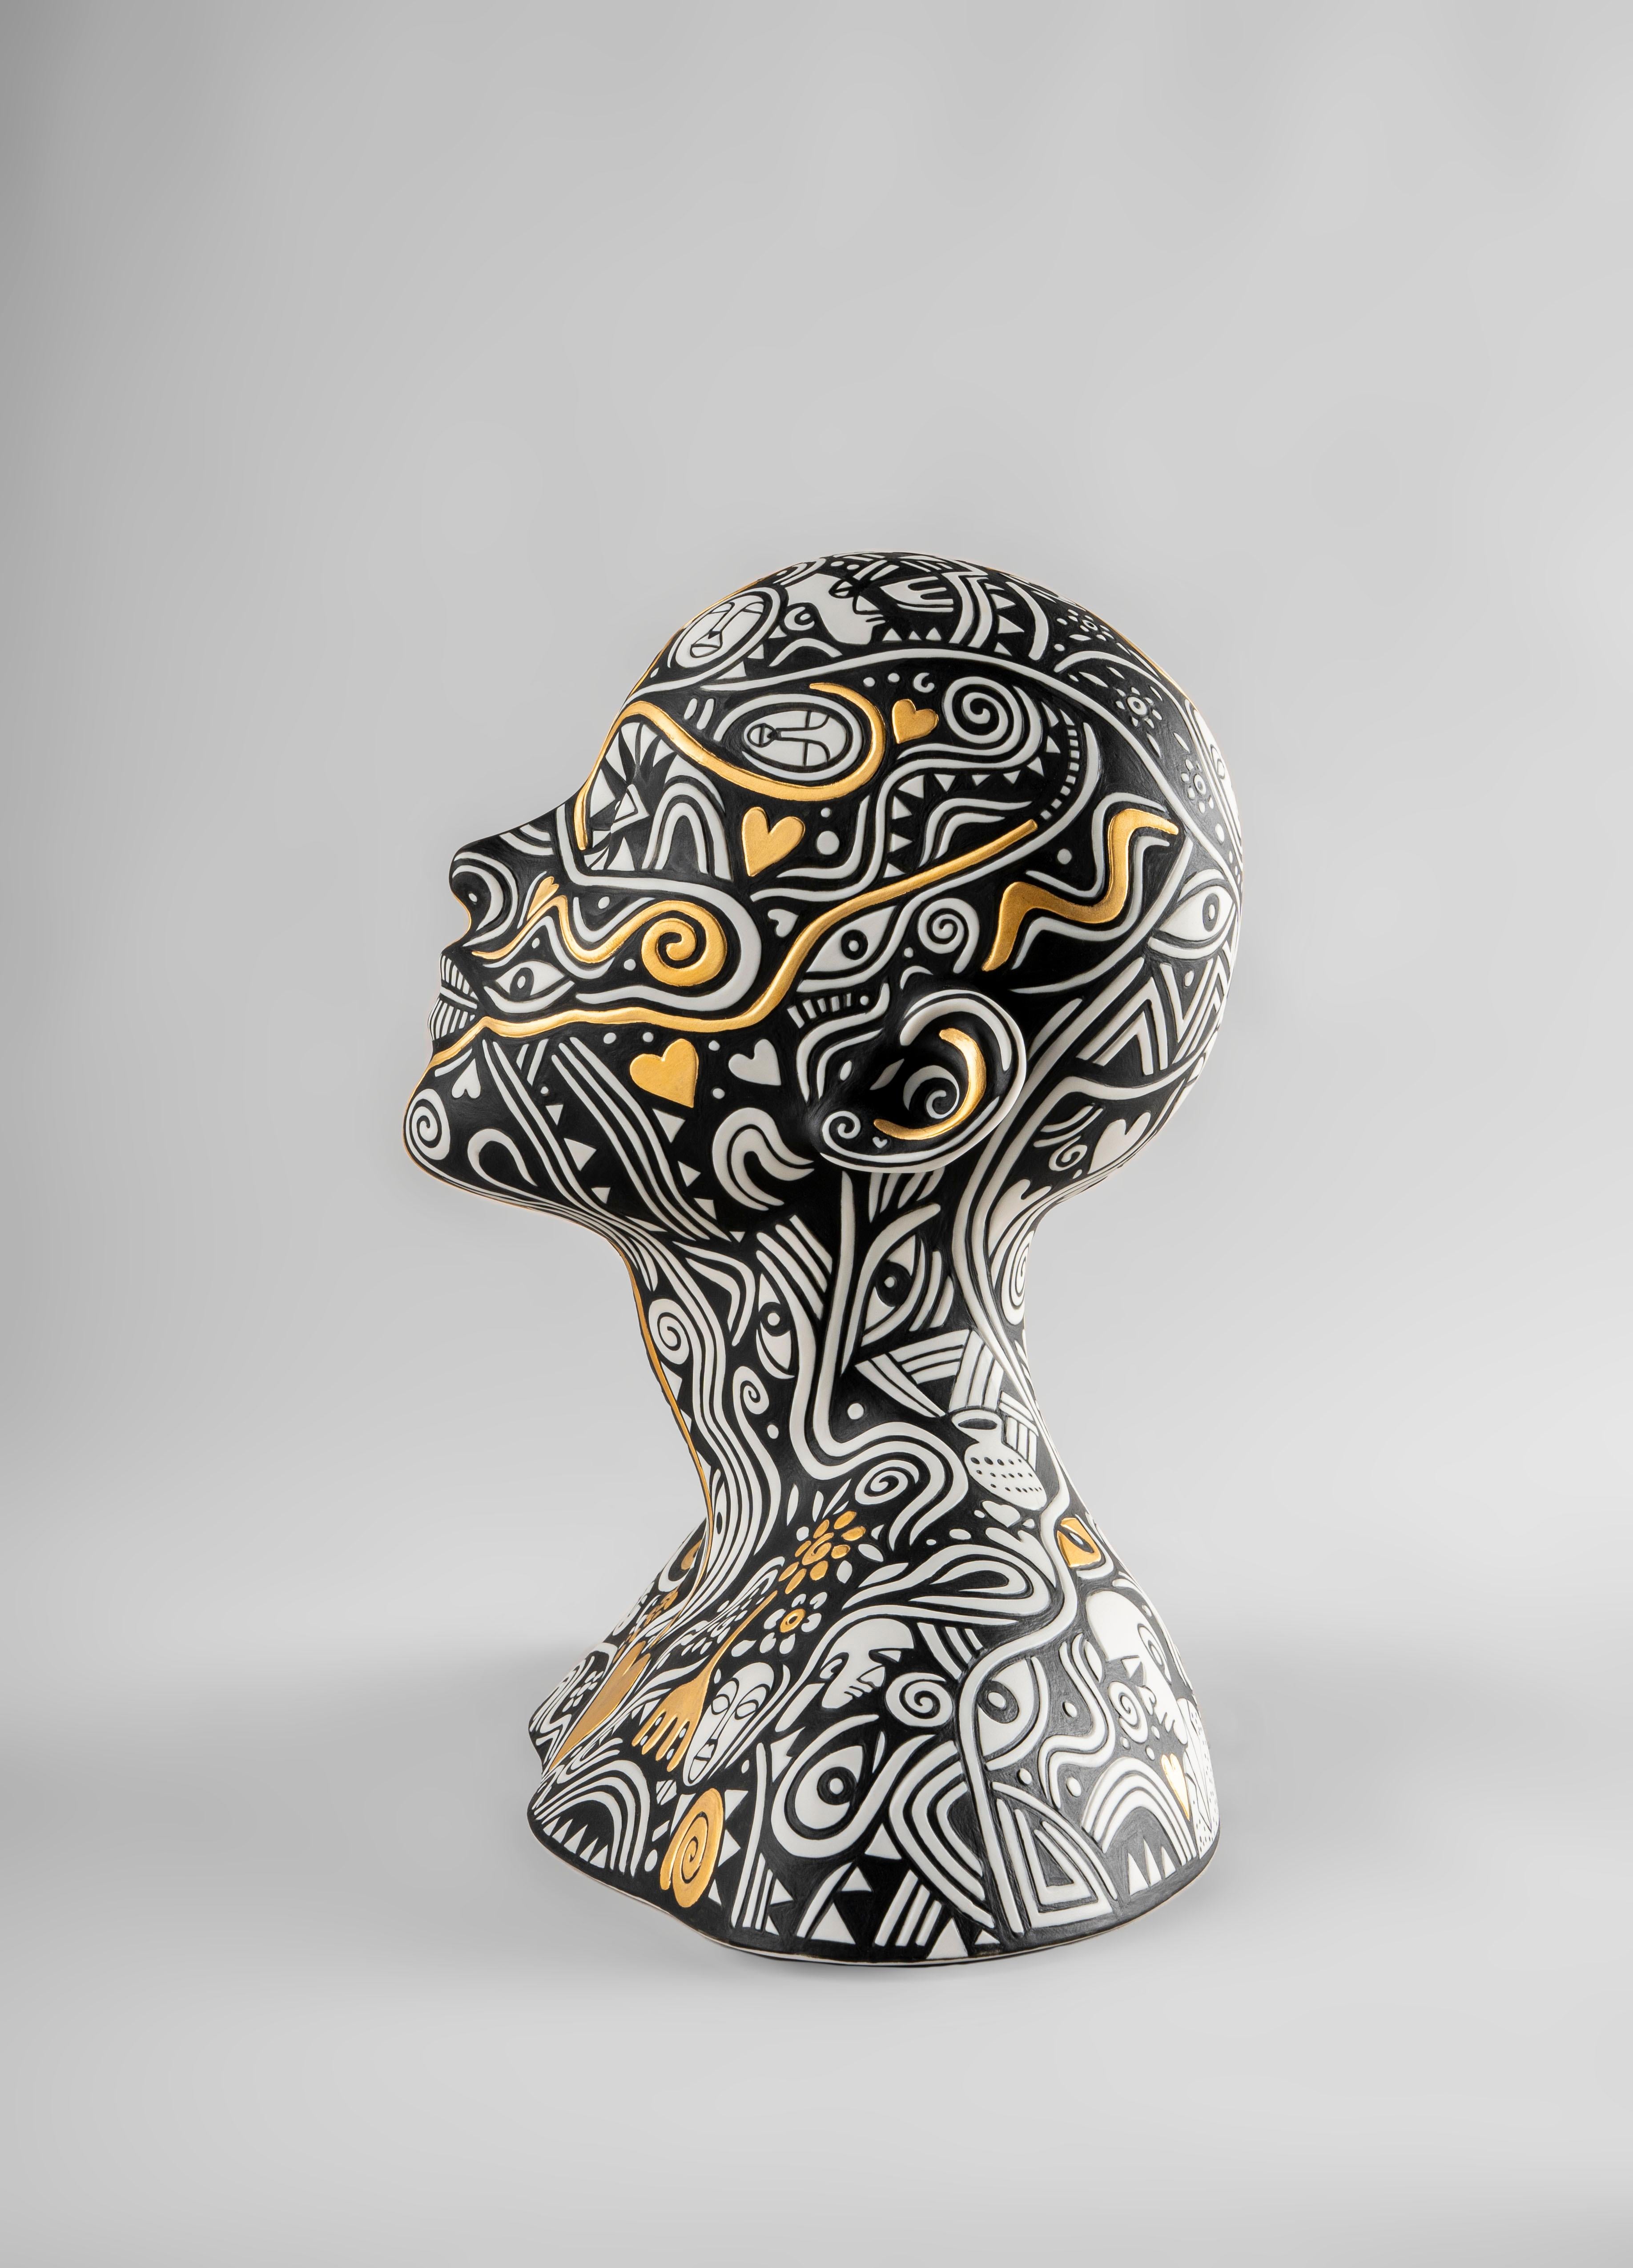 Porzellanskulptur, die in Collaboration mit dem nigerianischen Künstler Laolu entstanden ist. Eine konzeptionelle Kreation mit dem persönlichen Stempel eines engagierten Künstlers. Diese Porzellanskulptur mit einer faszinierenden Kombination aus